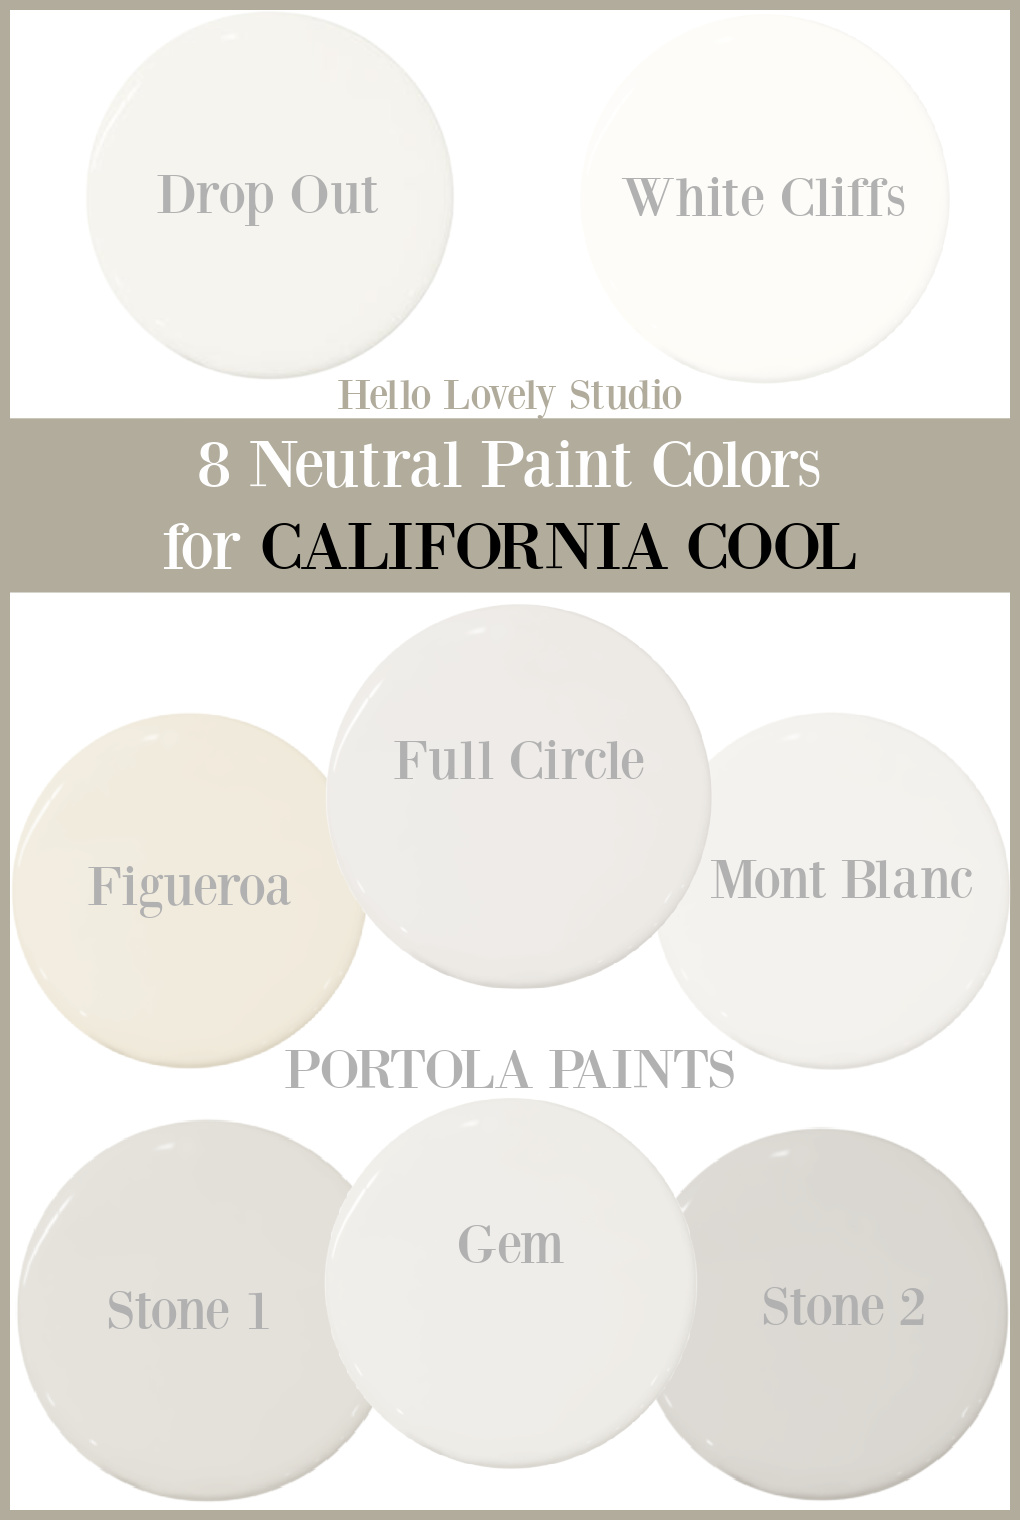 8 Neutral Paint Colors for California Cool interiors - Hello Lovely Studio. #neutralpaintcolors #paintcolors #portolapaints